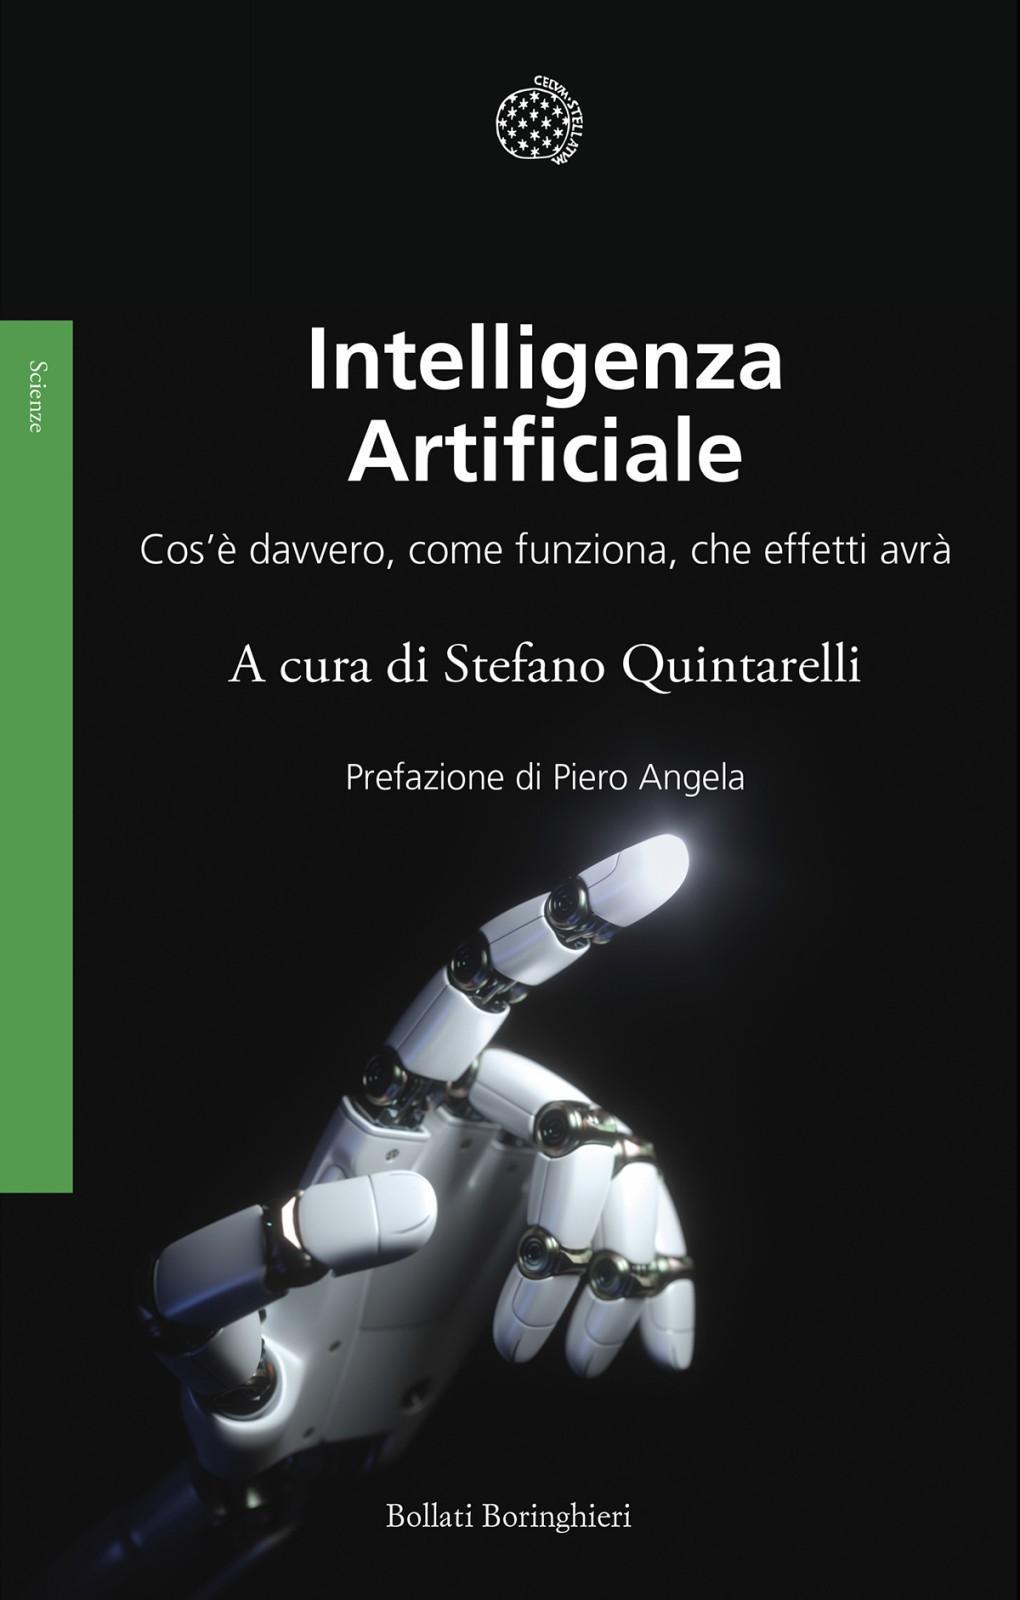 Intelligenza artificiale (Italian language, Bollati Boringhieri)